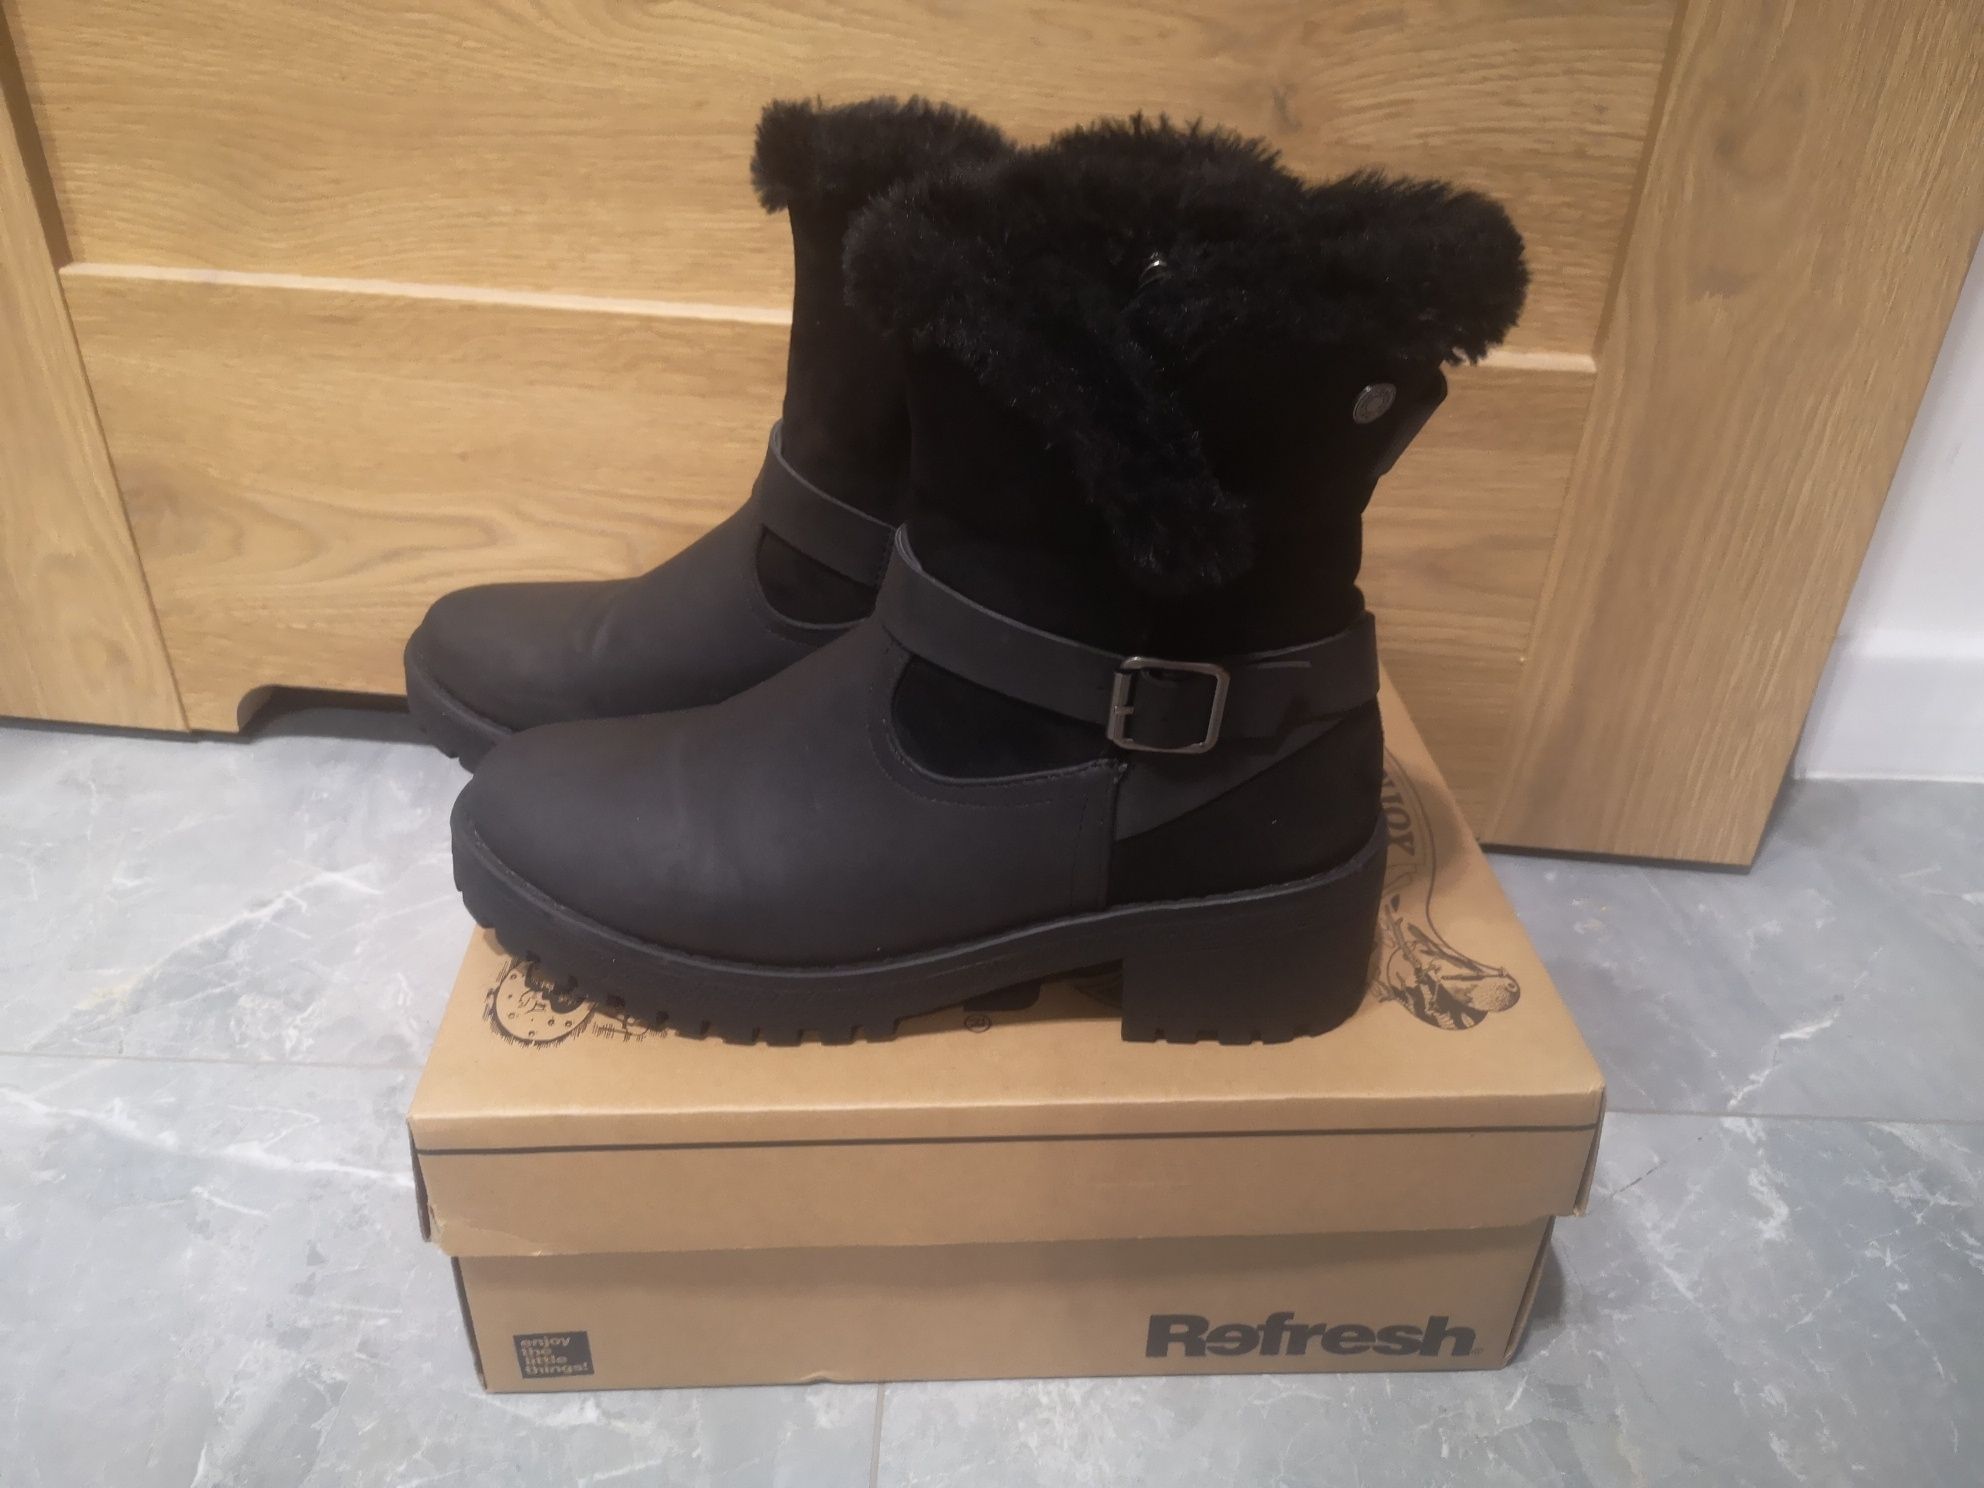 Skórzane buty zimowe wyższa cholewka z futerkiem Refresh r. 39